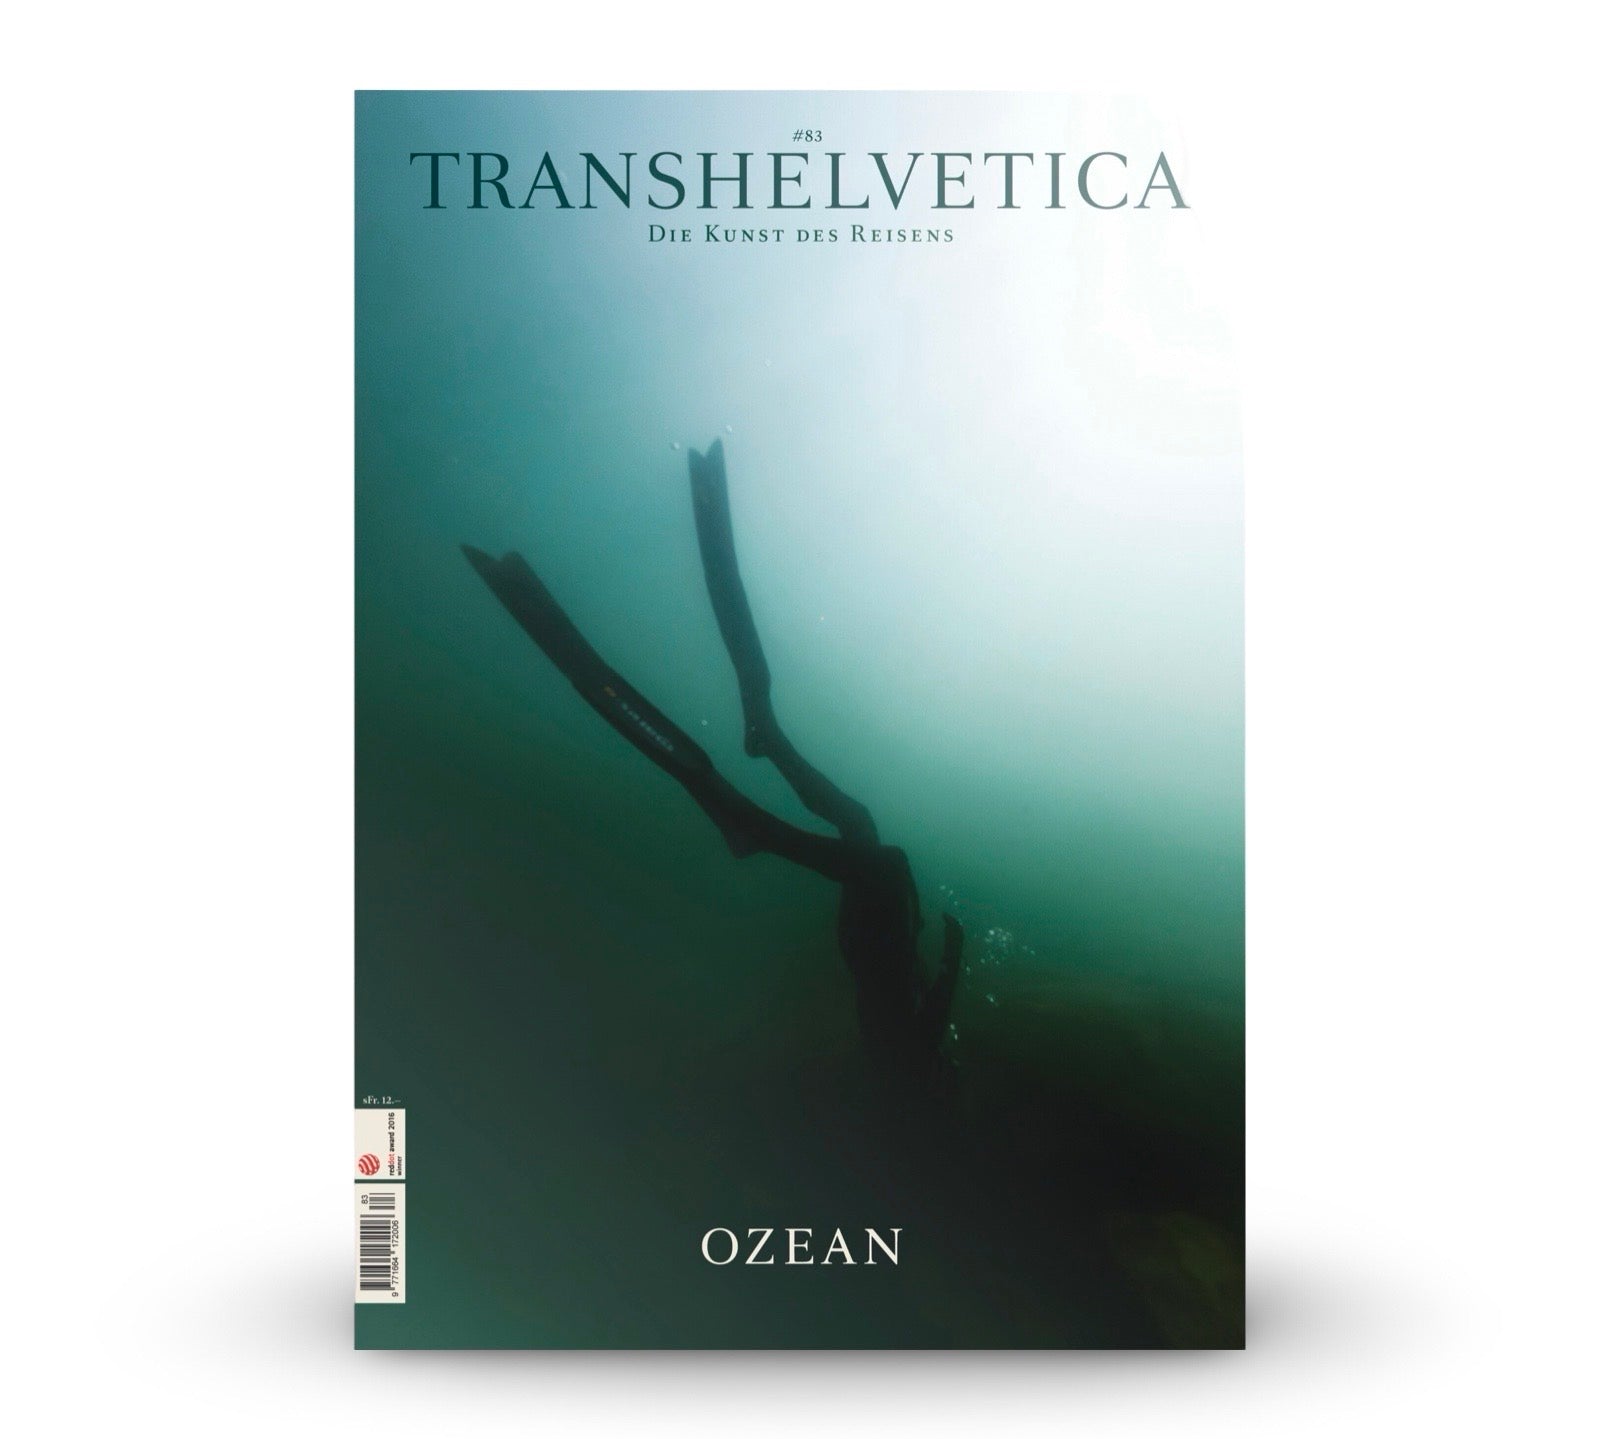 LABEL17 präsentiert die Ausgabe 83 von Transhelvetica: Ozean